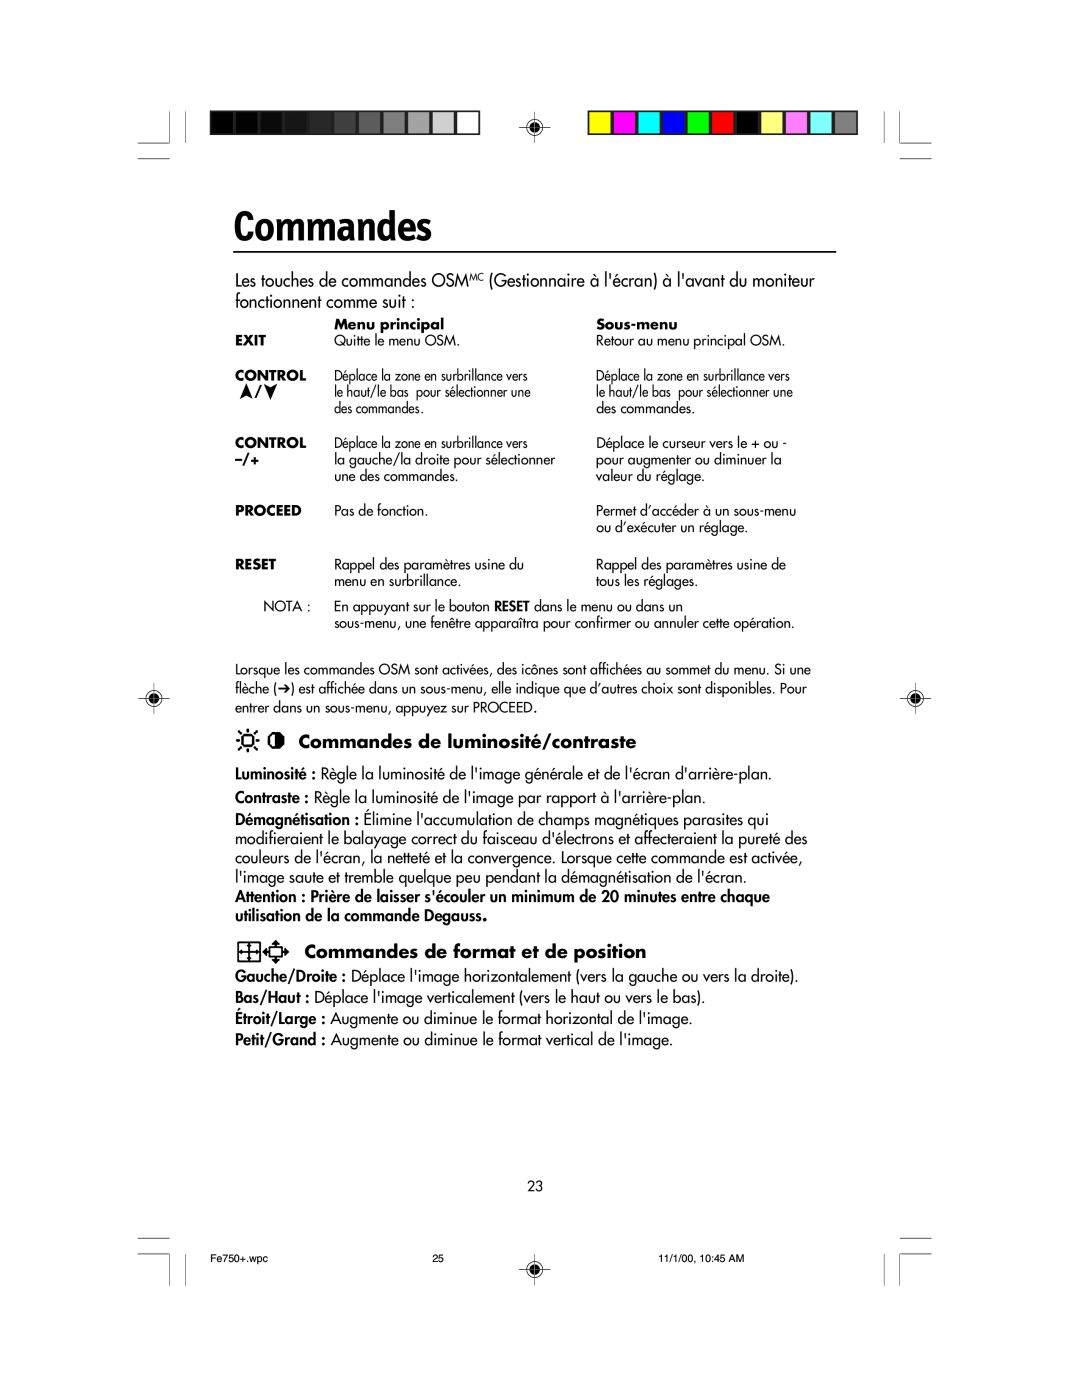 NEC FE750 Plus user manual Commandes de luminosité/contraste, Commandes de format et de position 